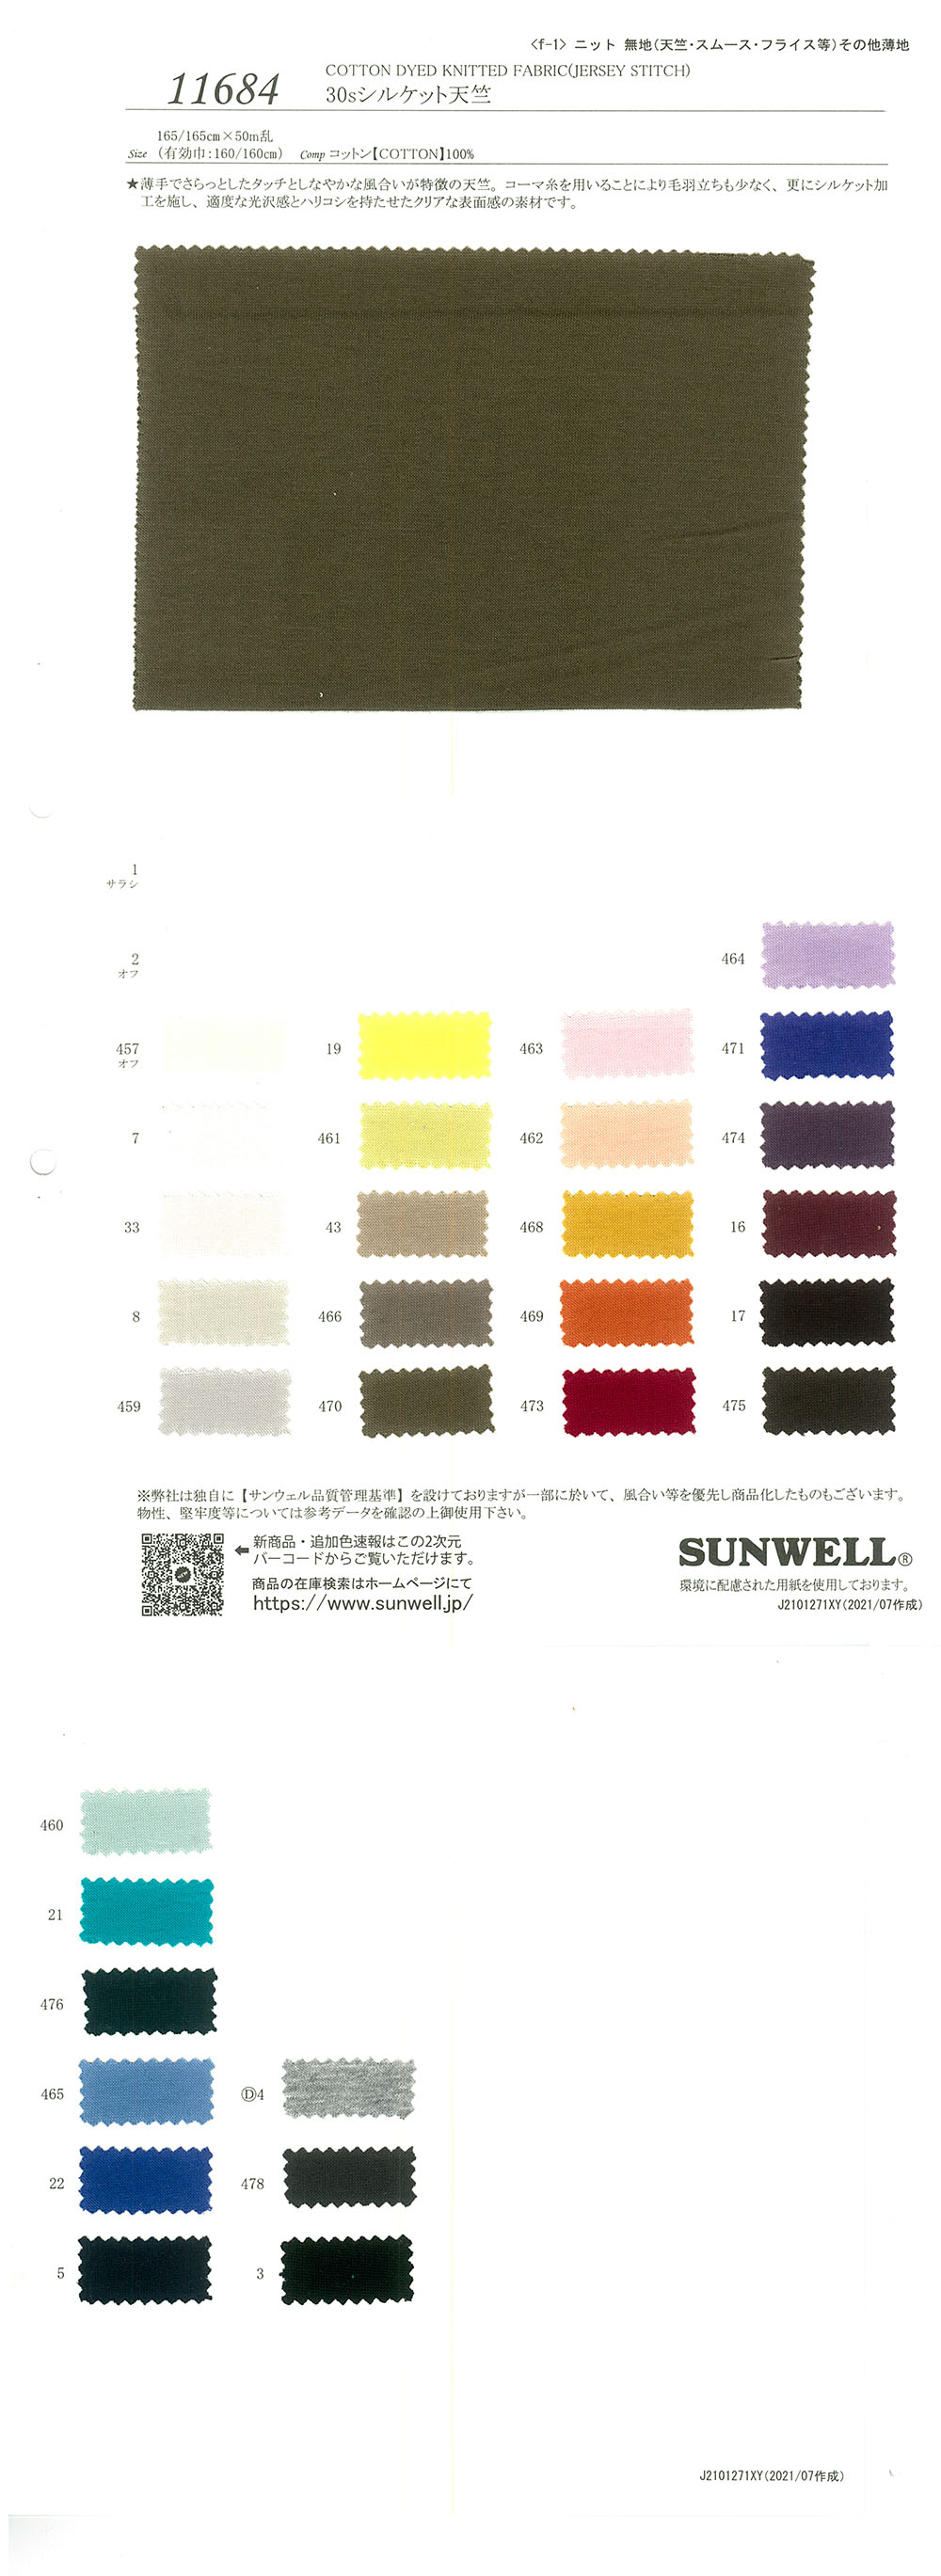 11684 30 Fäden Mercerisierte Baumwolle Tianzhu-Baumwolle[Textilgewebe] SUNWELL